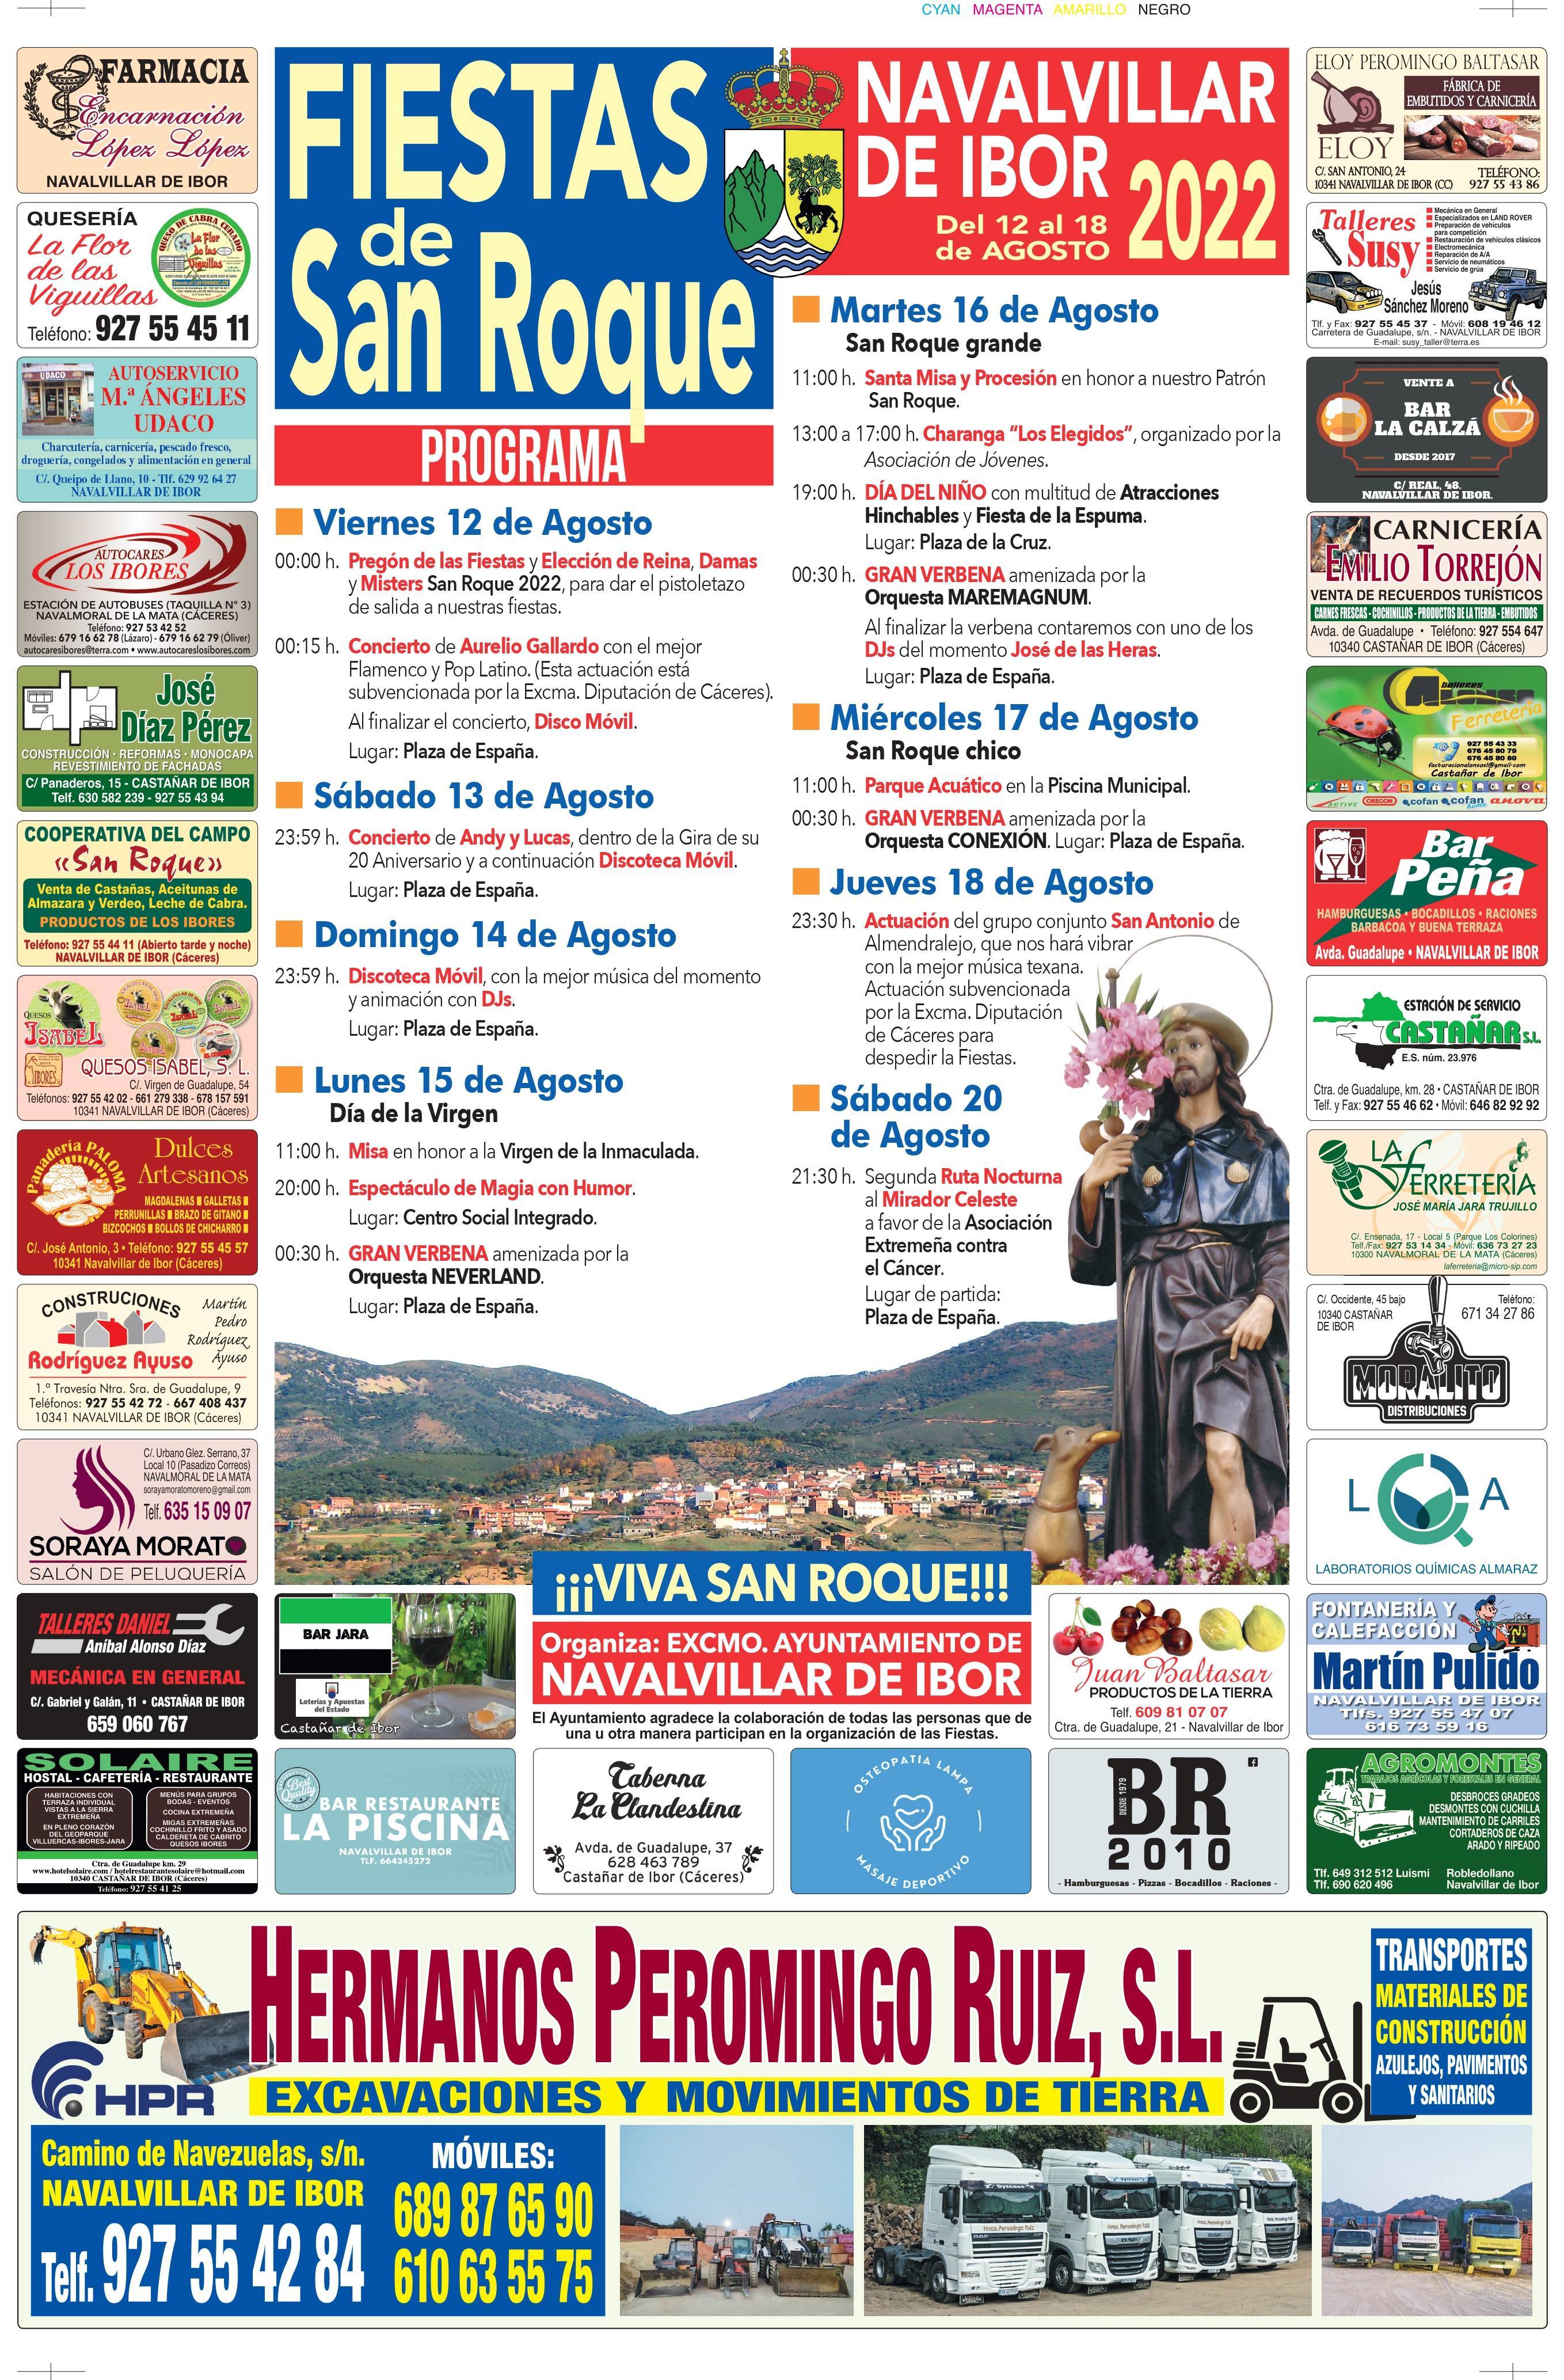 Fiestas de San Roque (2022) - Navalvillar de Ibor (Cáceres) 3